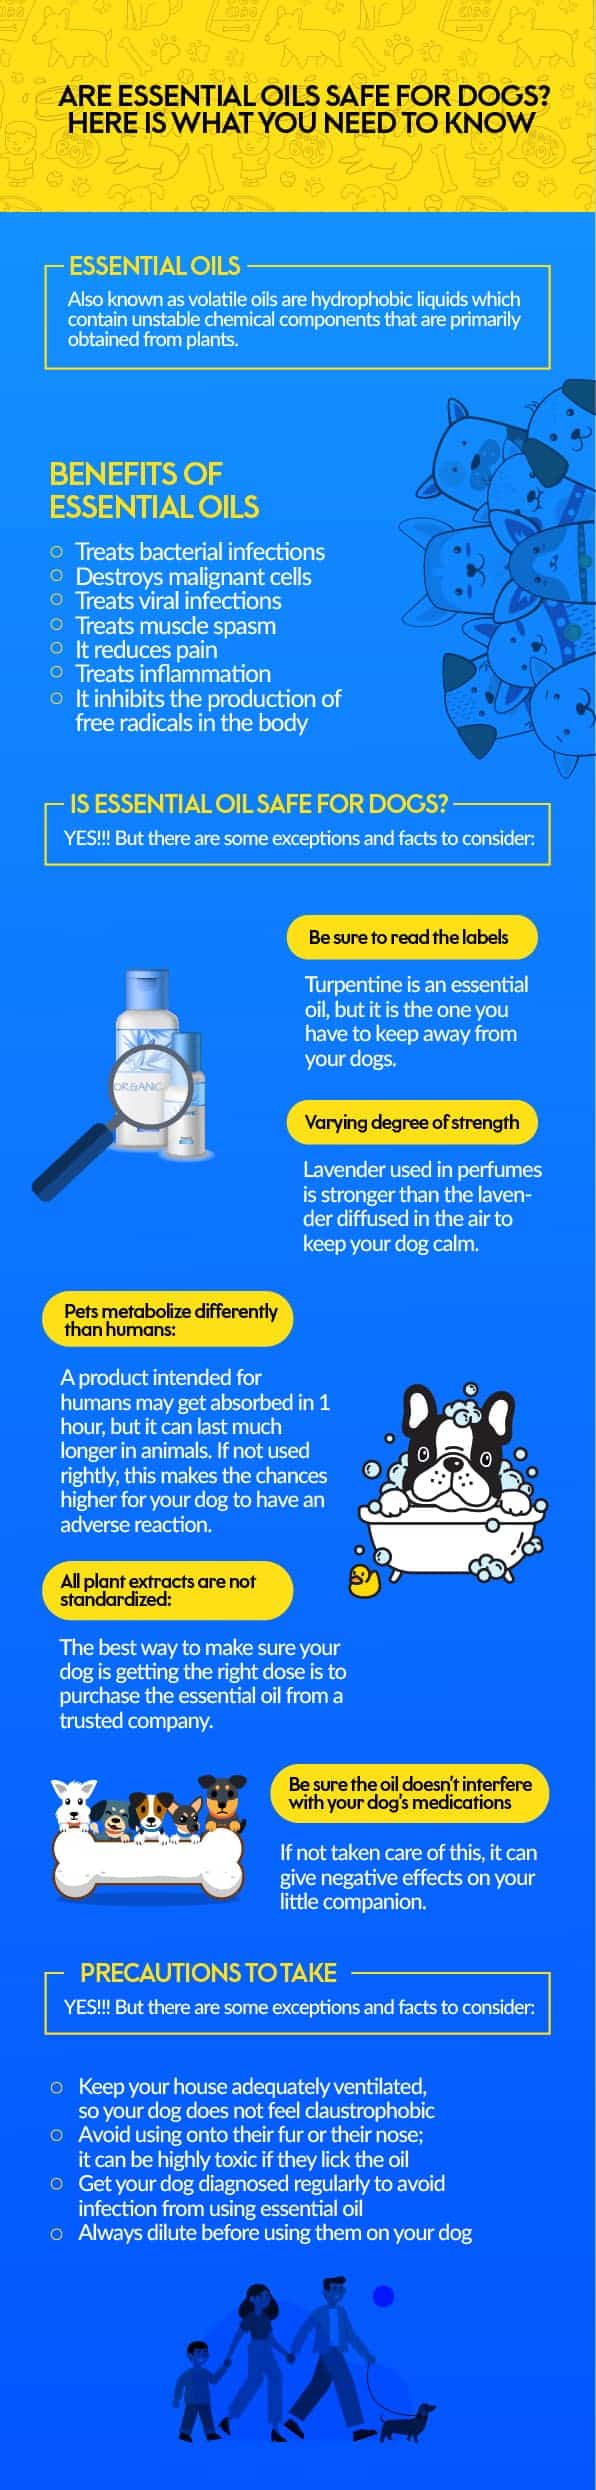 dog-safe essential oils graphic